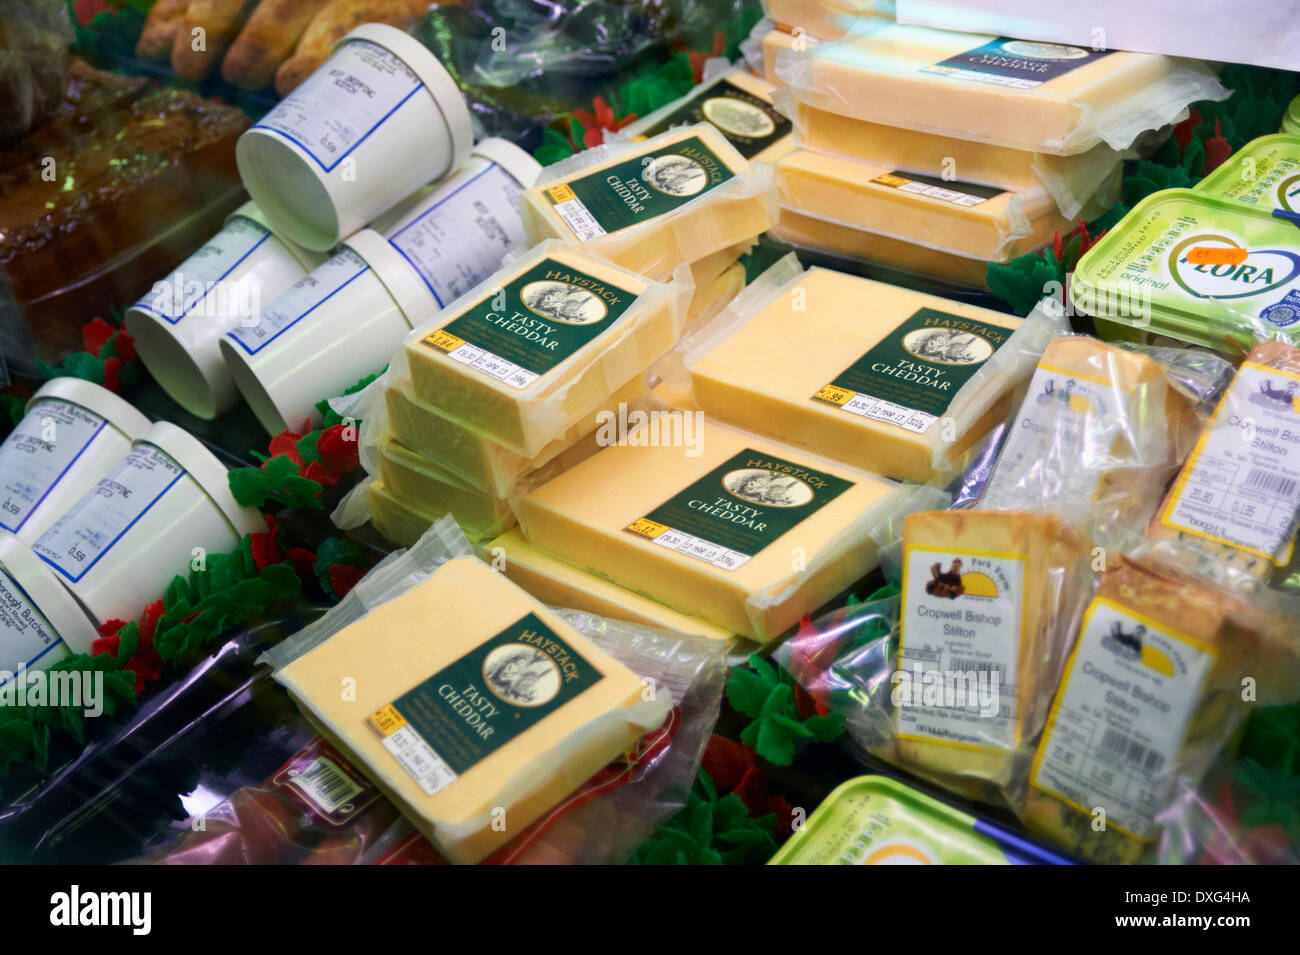 Visualización de productos lácteos refrigerados en la tienda Foto de stock